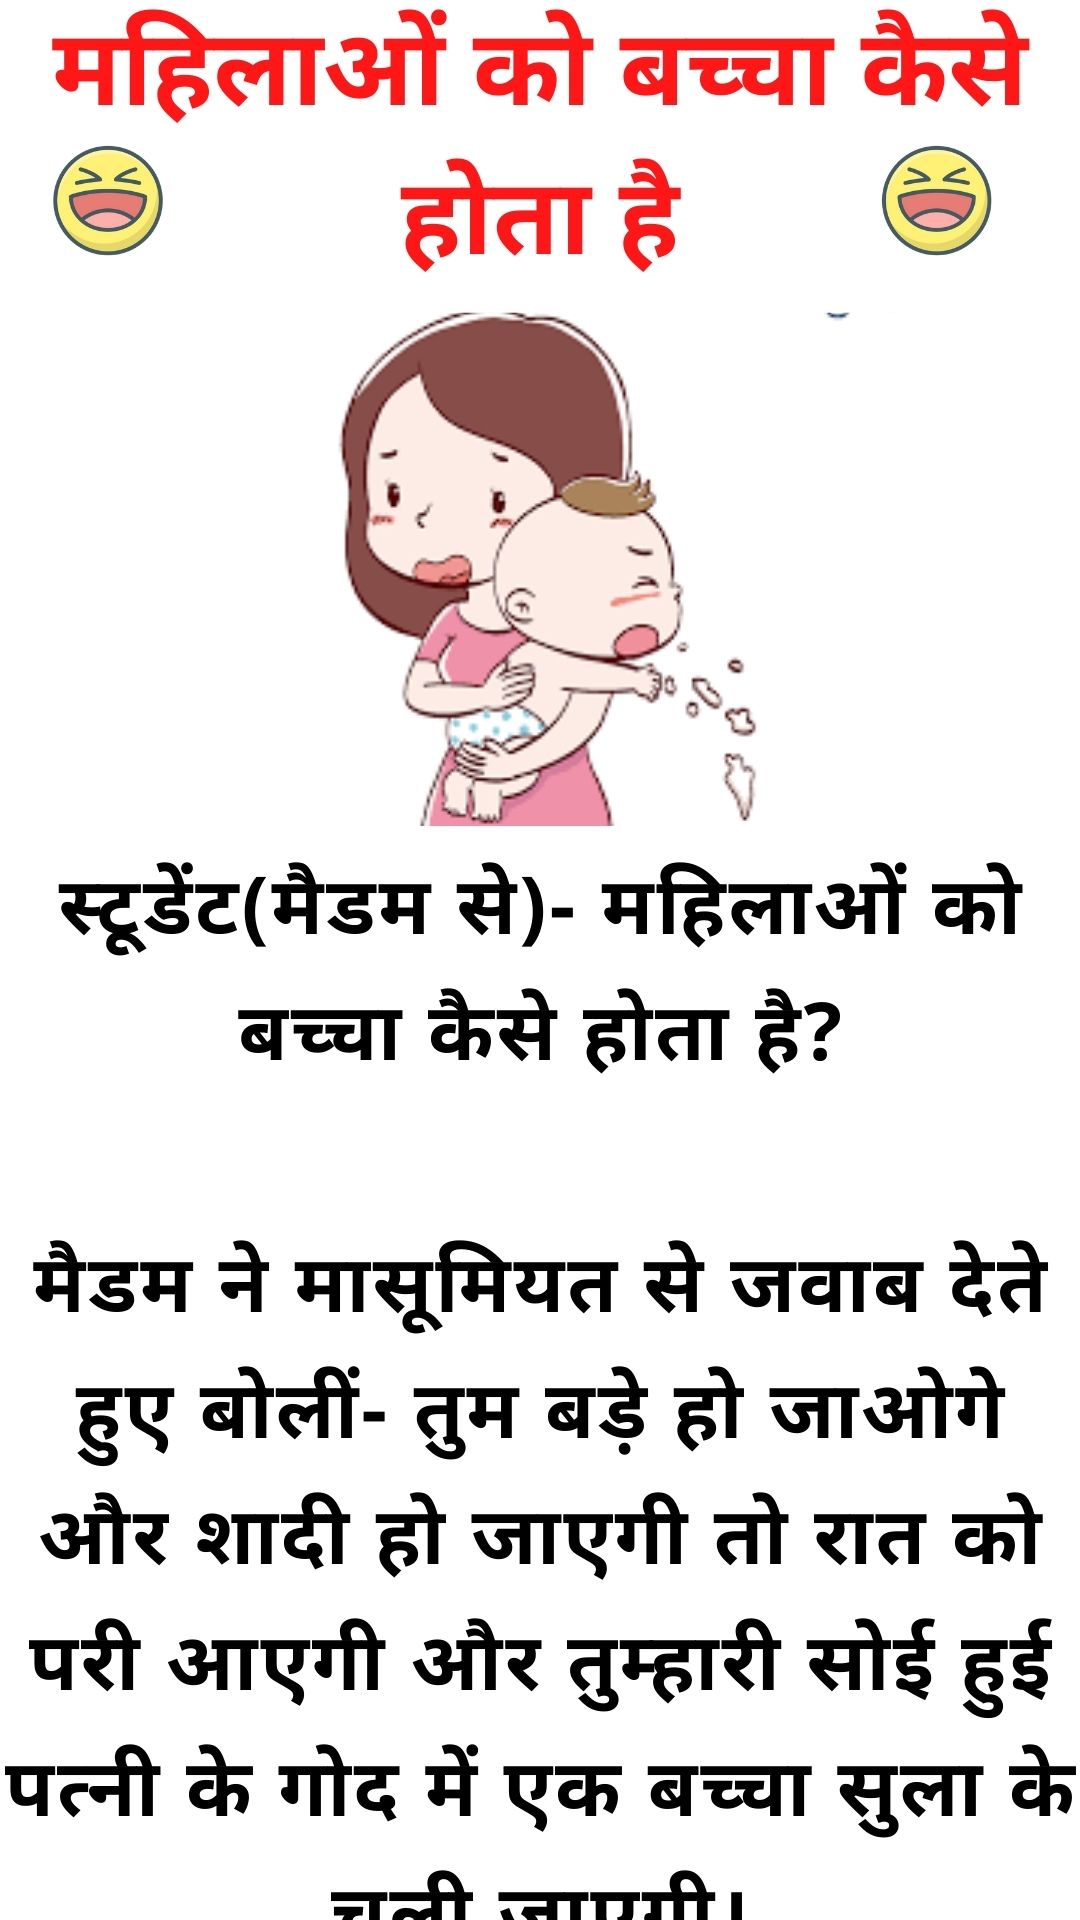 महिलाओं को बच्चा कैसे होता है – Double meaning jokes in hindi